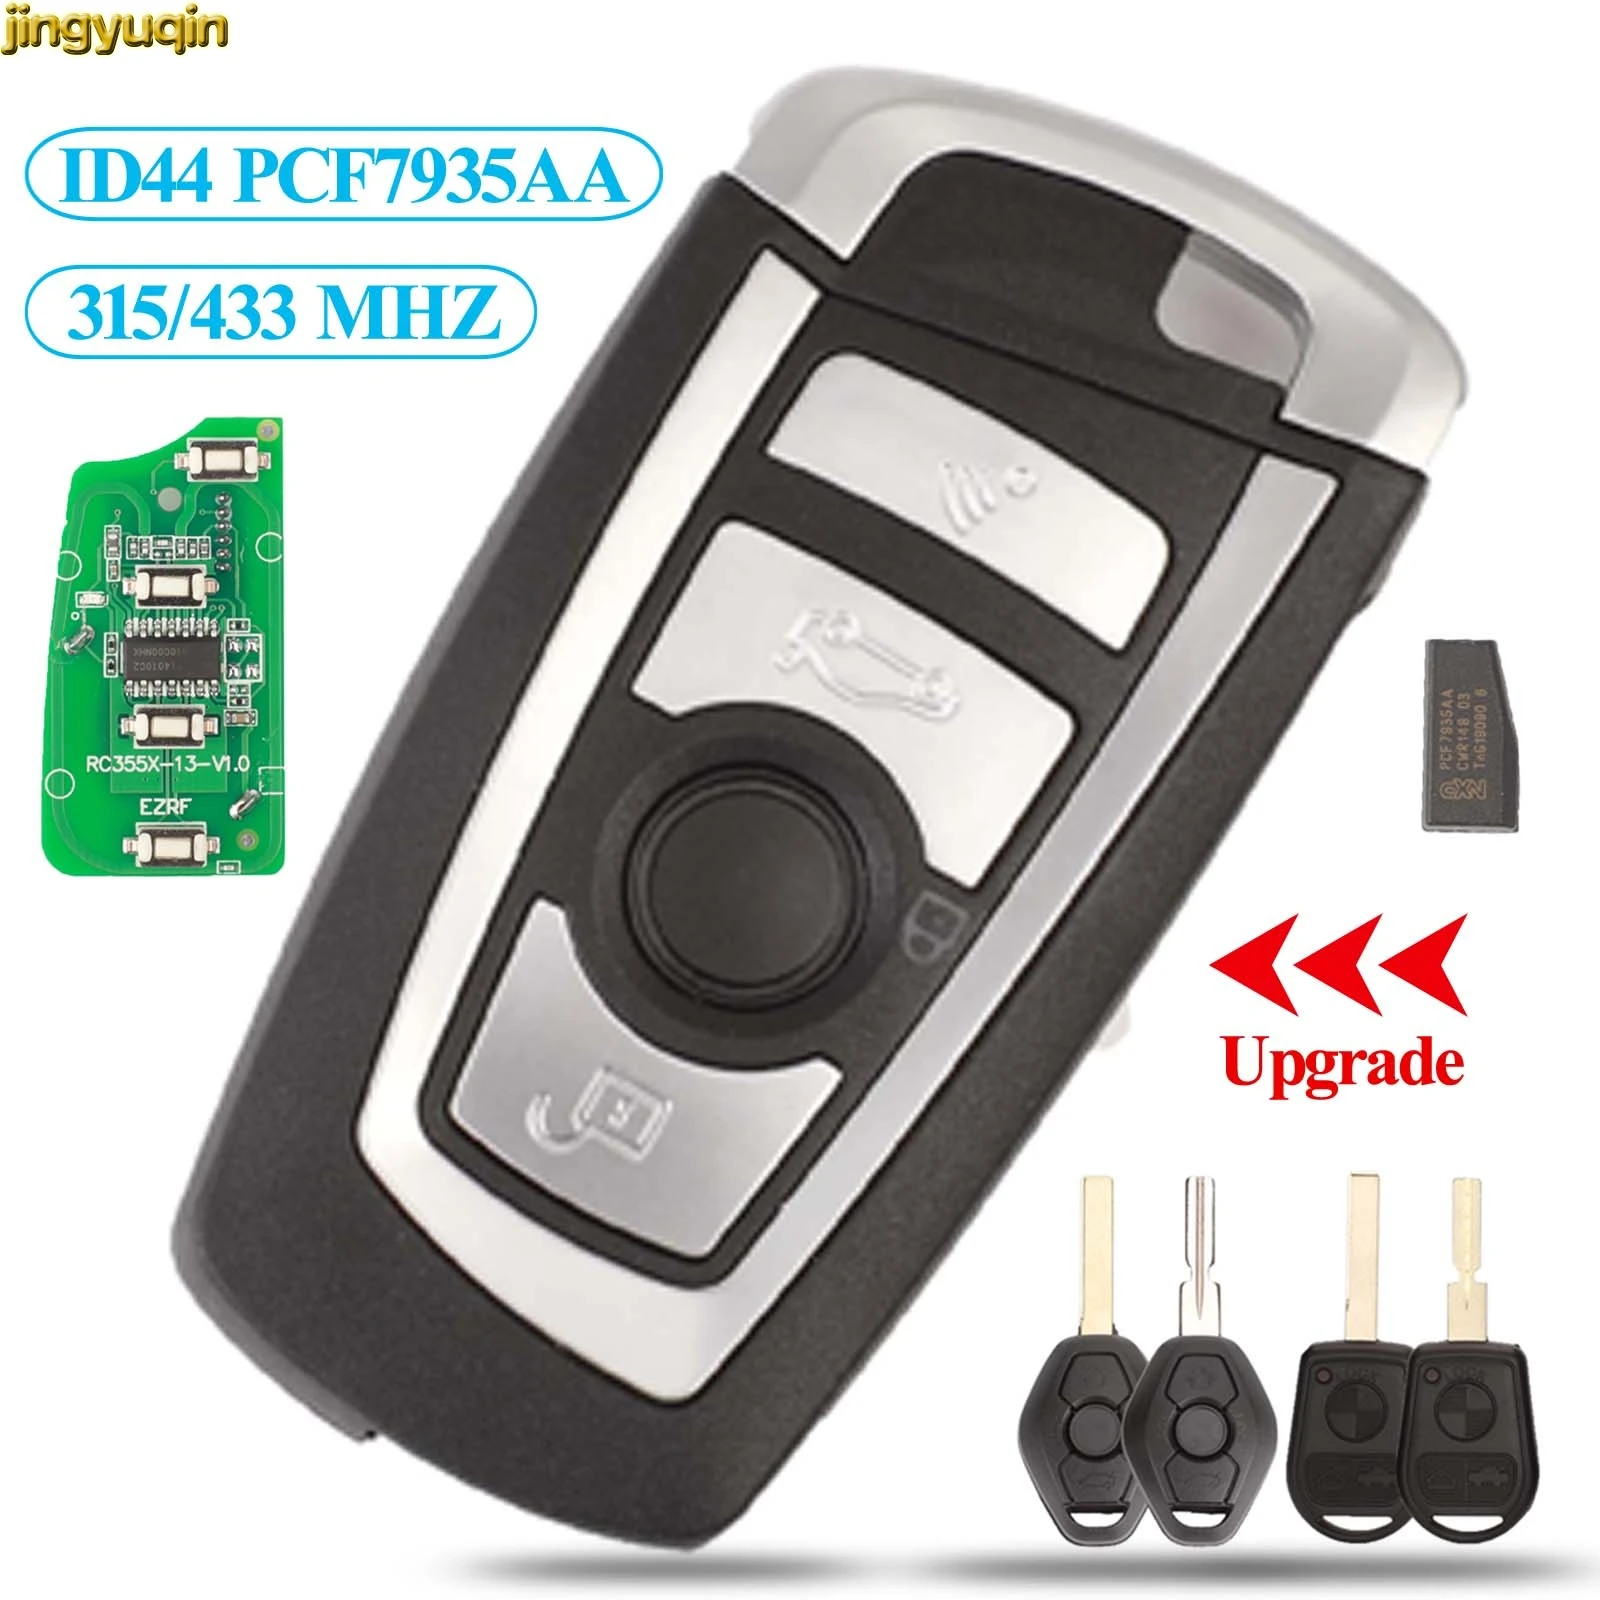 

jingyuqin EWS Flip Remote Key 315MHz/433MHz PCF7935AA ID44 Chip Refit for BMW E38 E39 E46 M5 X3 X5 Z3 Z4 HU58 HU92 4 Button